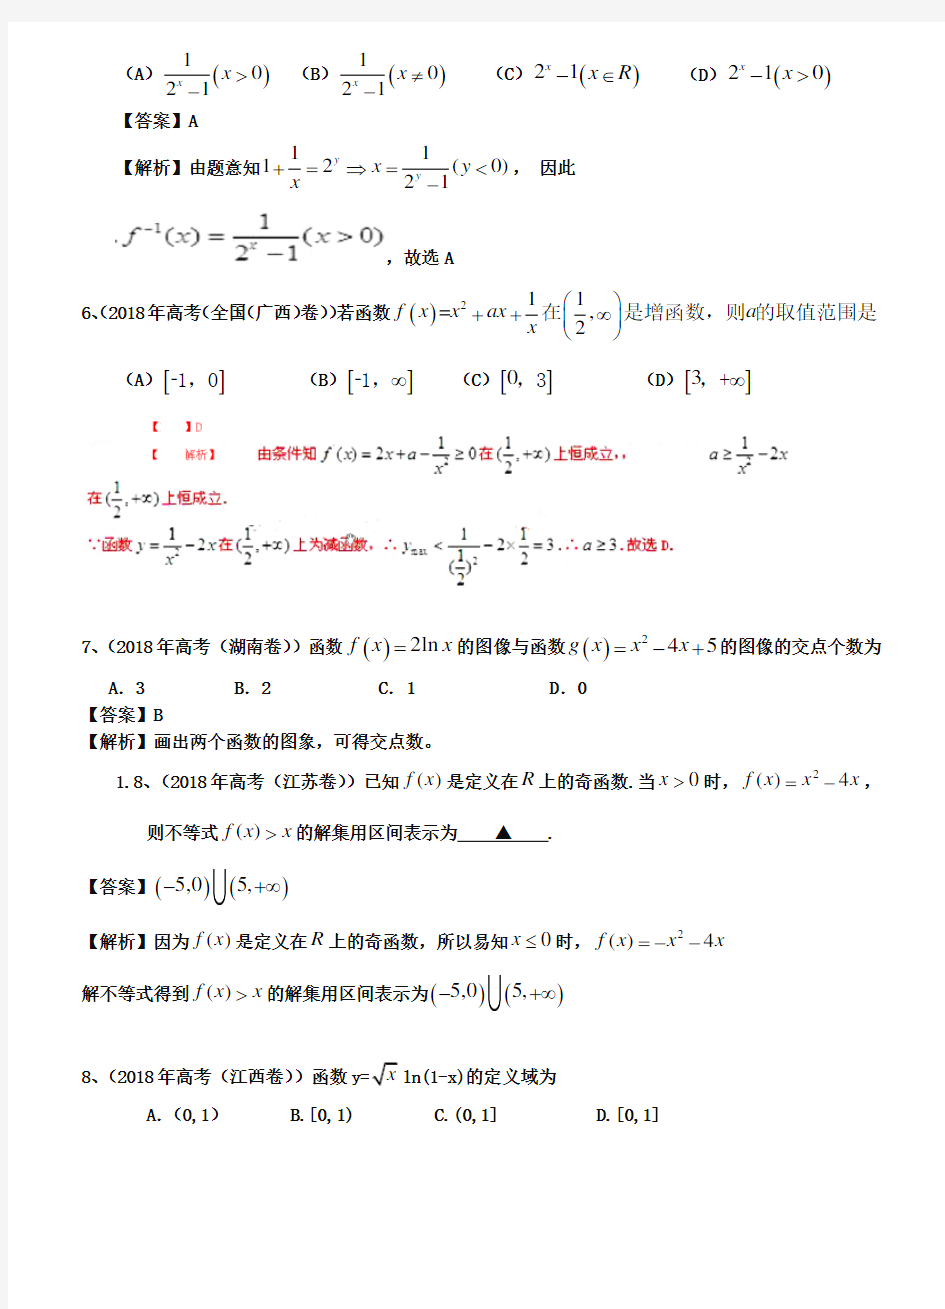 2019年高考真题理科数学分类汇编(解析版)：函数及答案